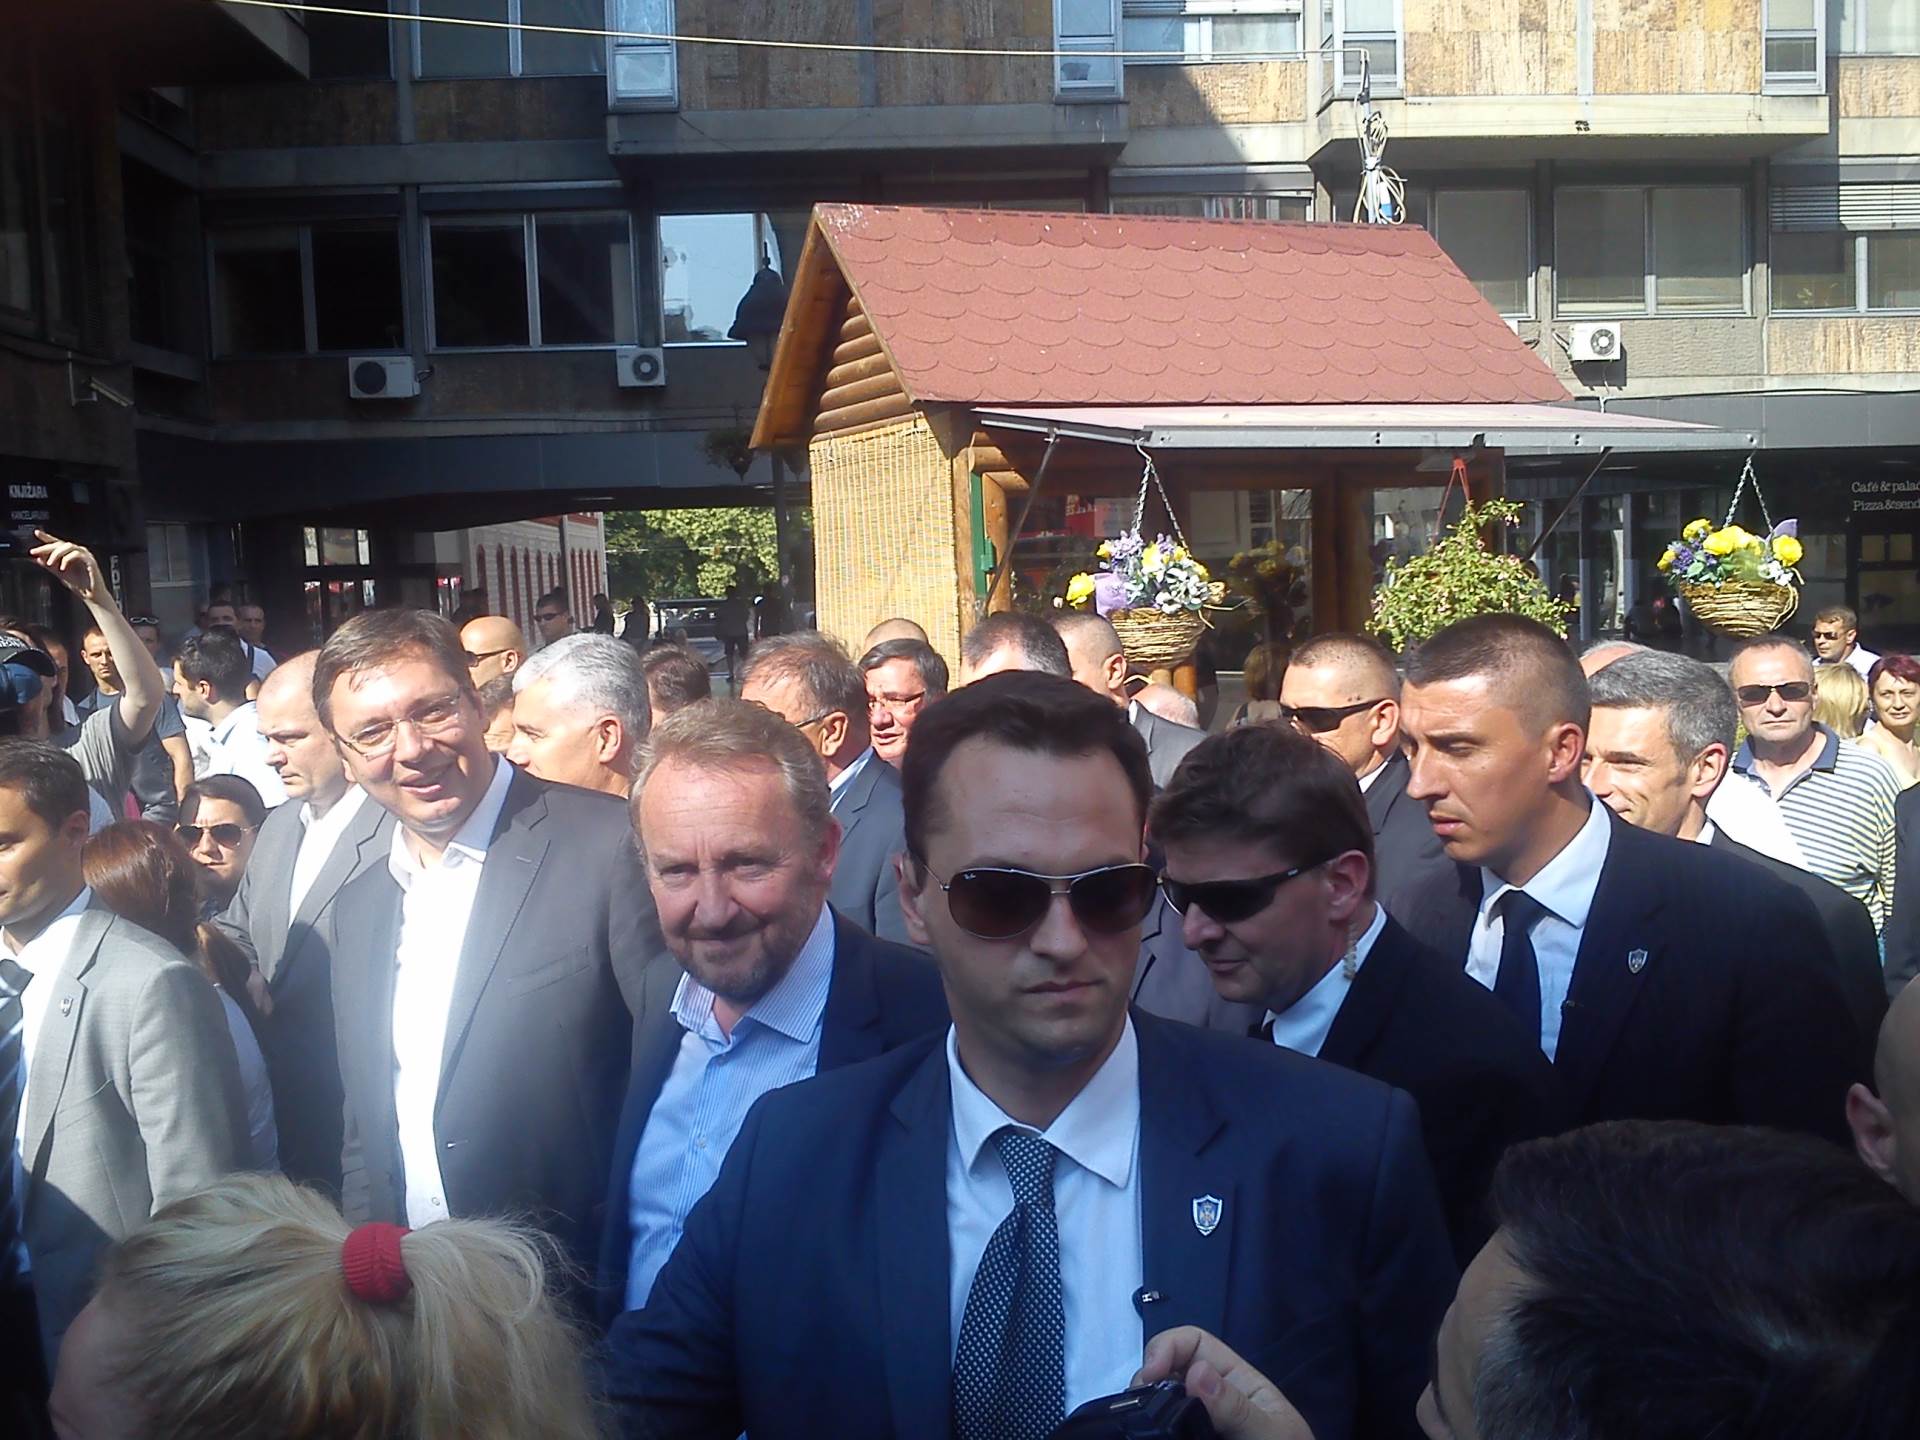  Aleksandar Vučić i Bakir Izetbegović nisu u dobrim odnosima, kaže Ivanić 